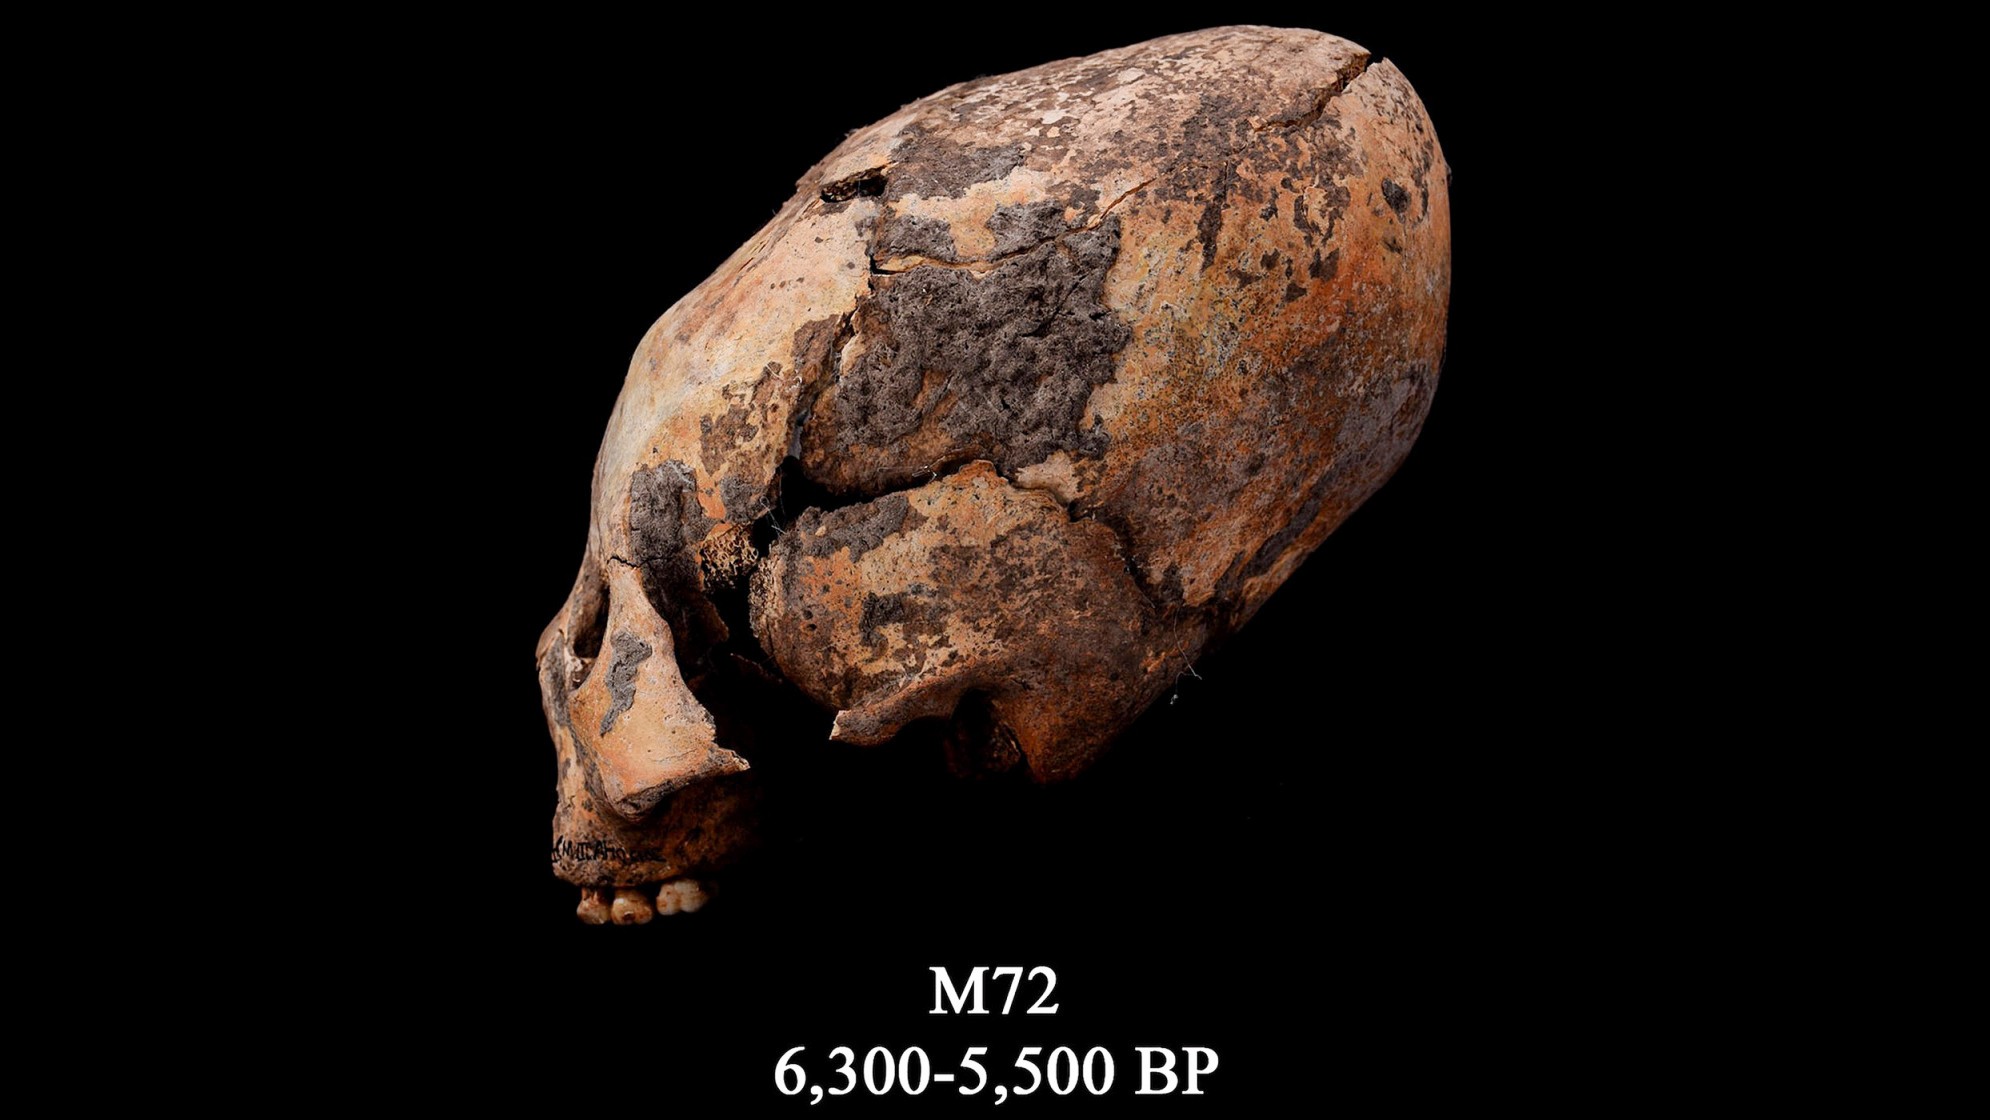 Az M72 néven ismert koponya. Ezt az átformált emberi koponyát Északkelet-Kínában találták meg, és szándékosan módosították